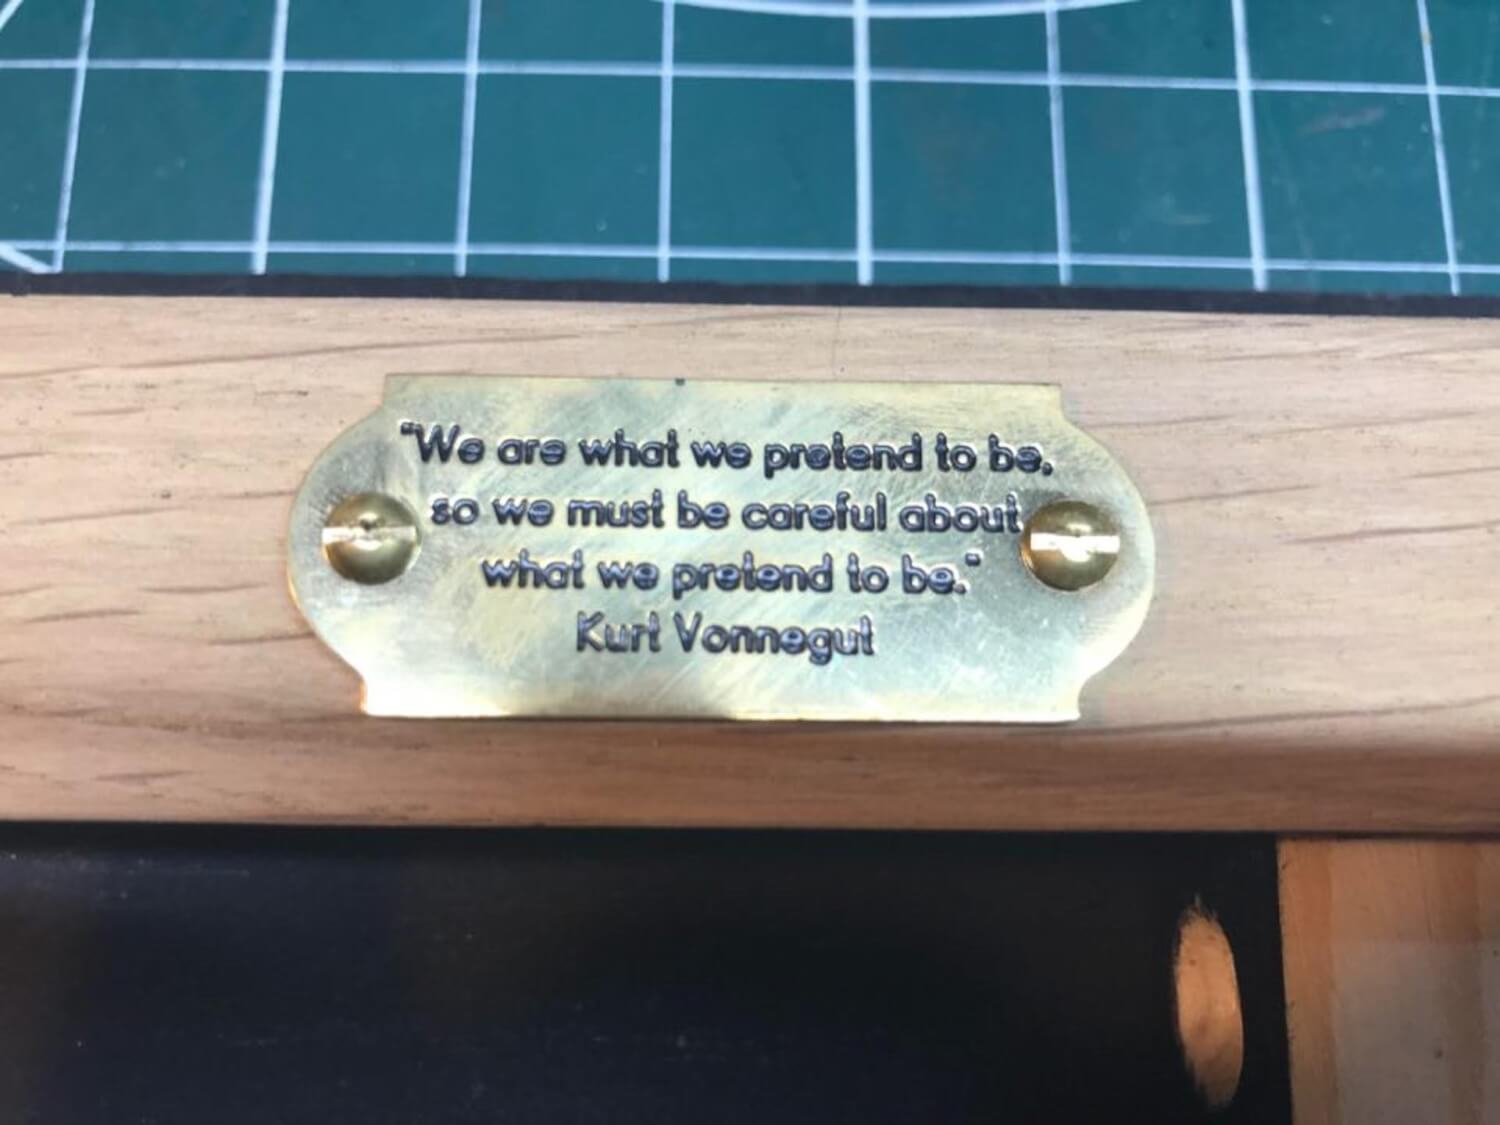 A favourite Kurt Vonnegut quote